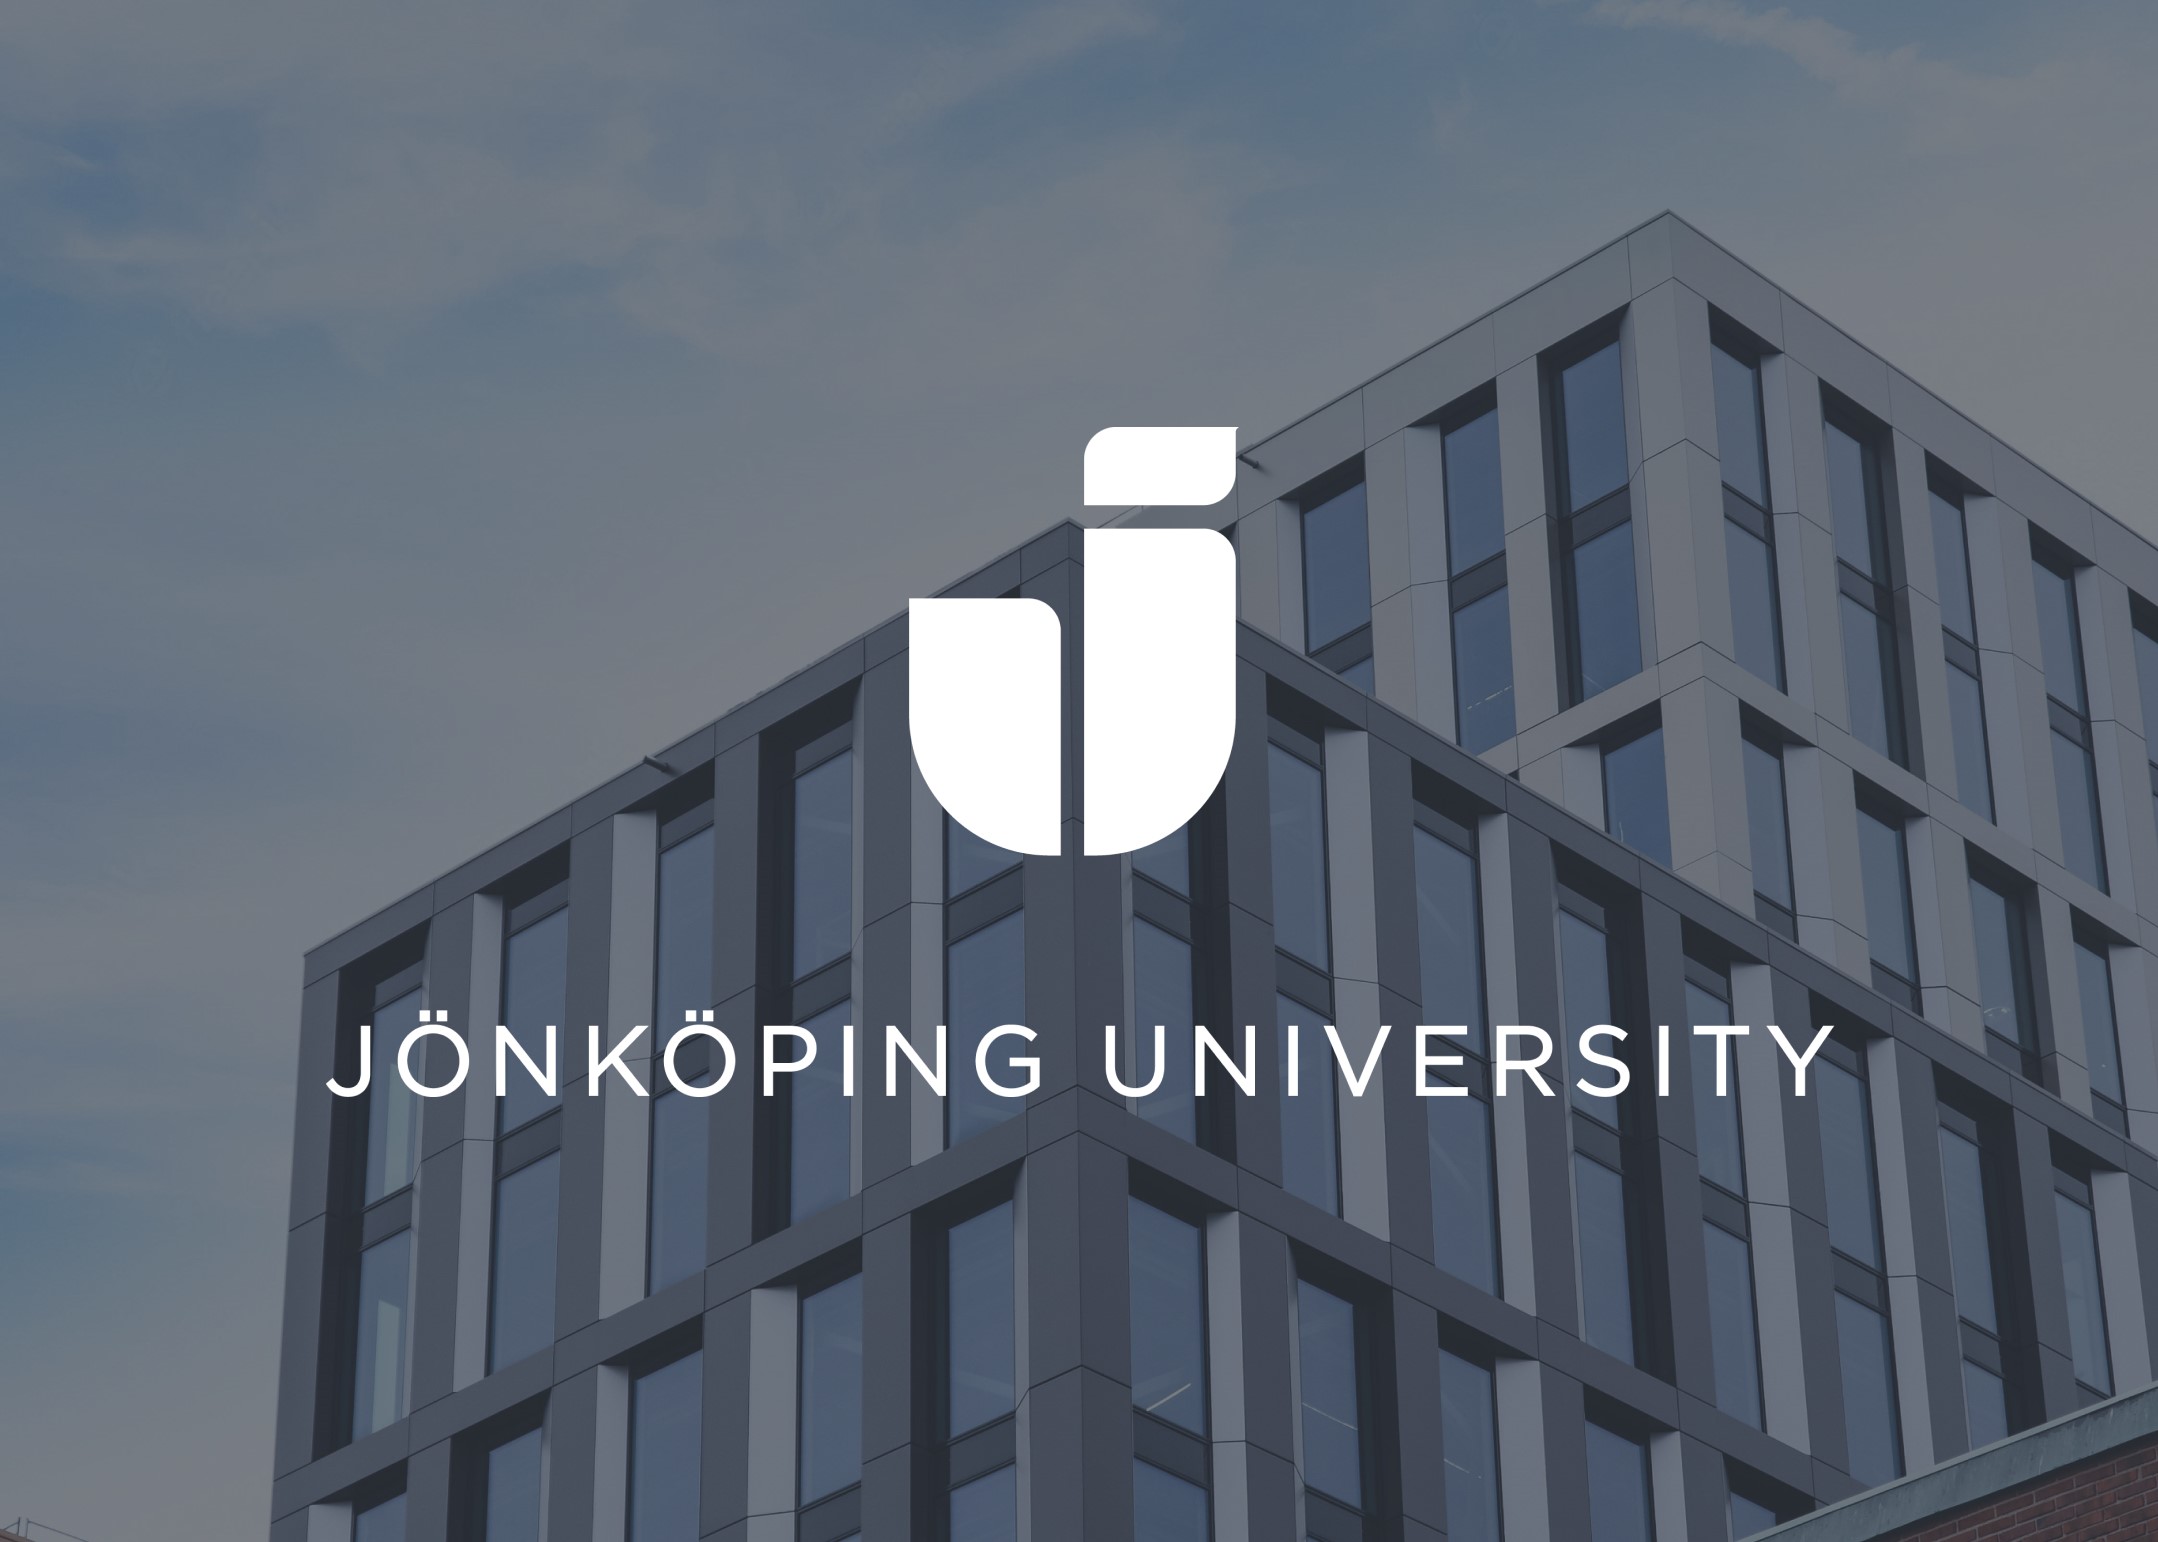 Science Park Towers med texten "Jönköping University" och logotyp.